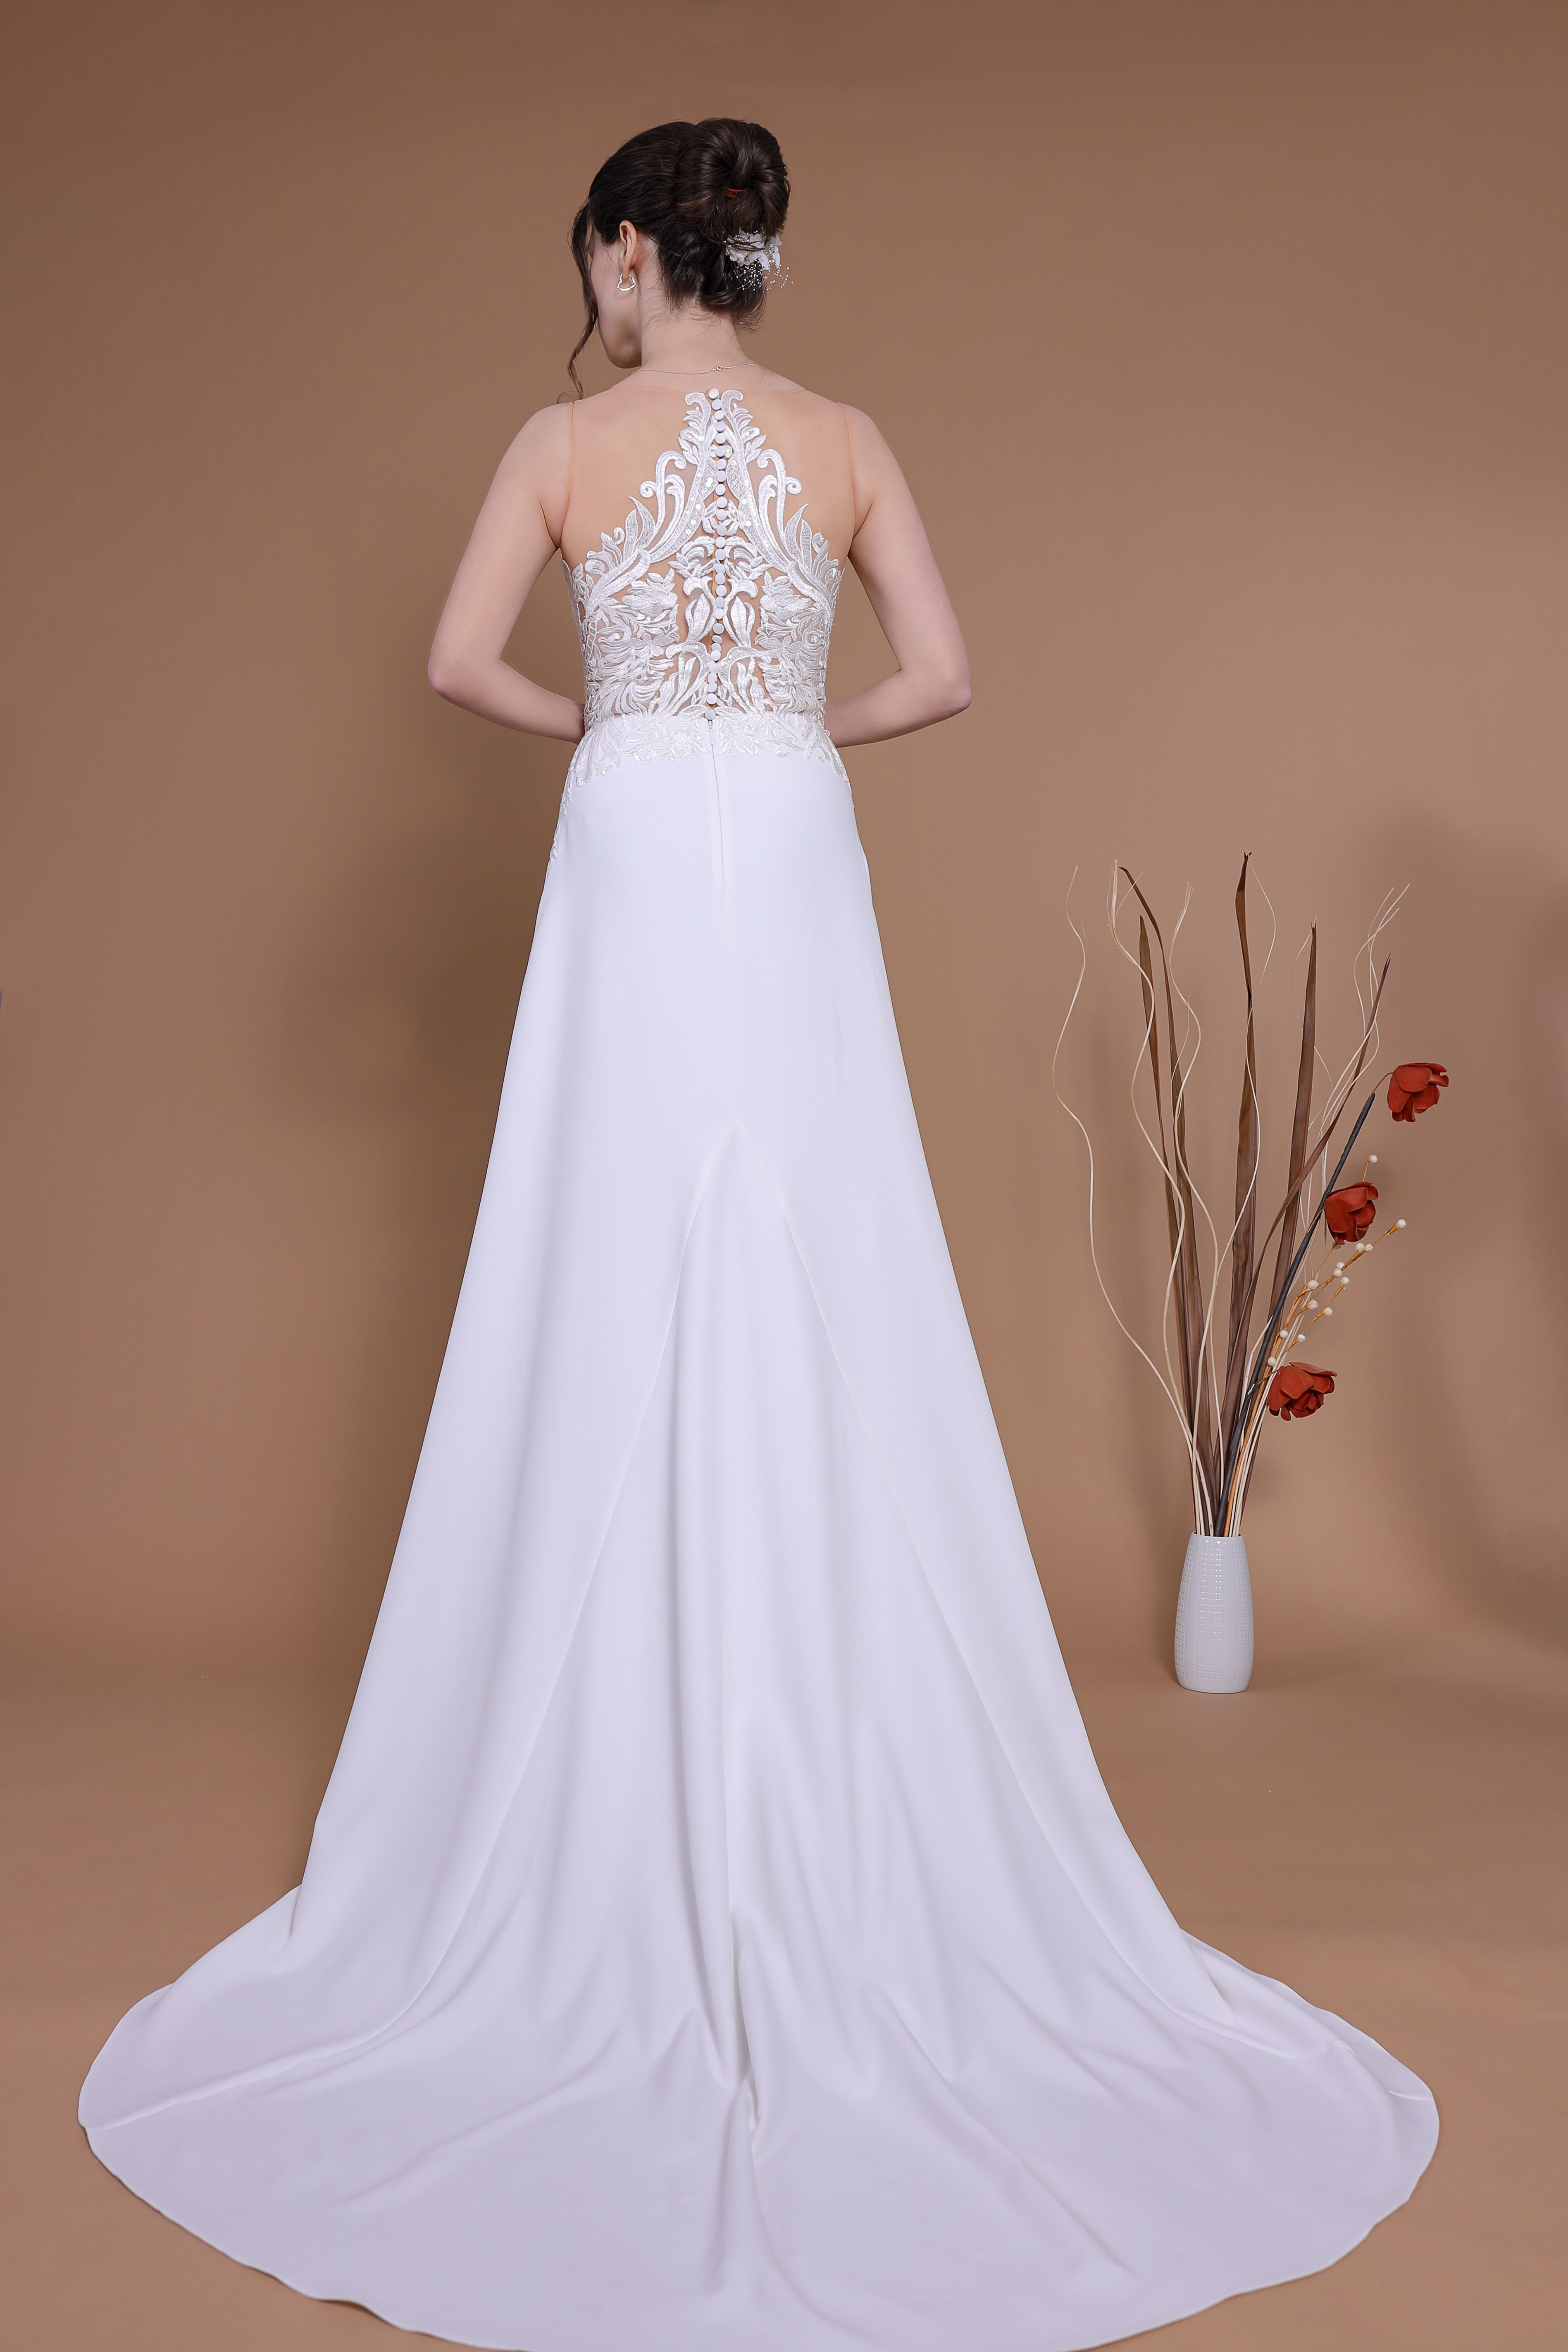 Schantal Brautkleid aus der Kollektion „Traum“, Modell 28030 - 2. Foto 5